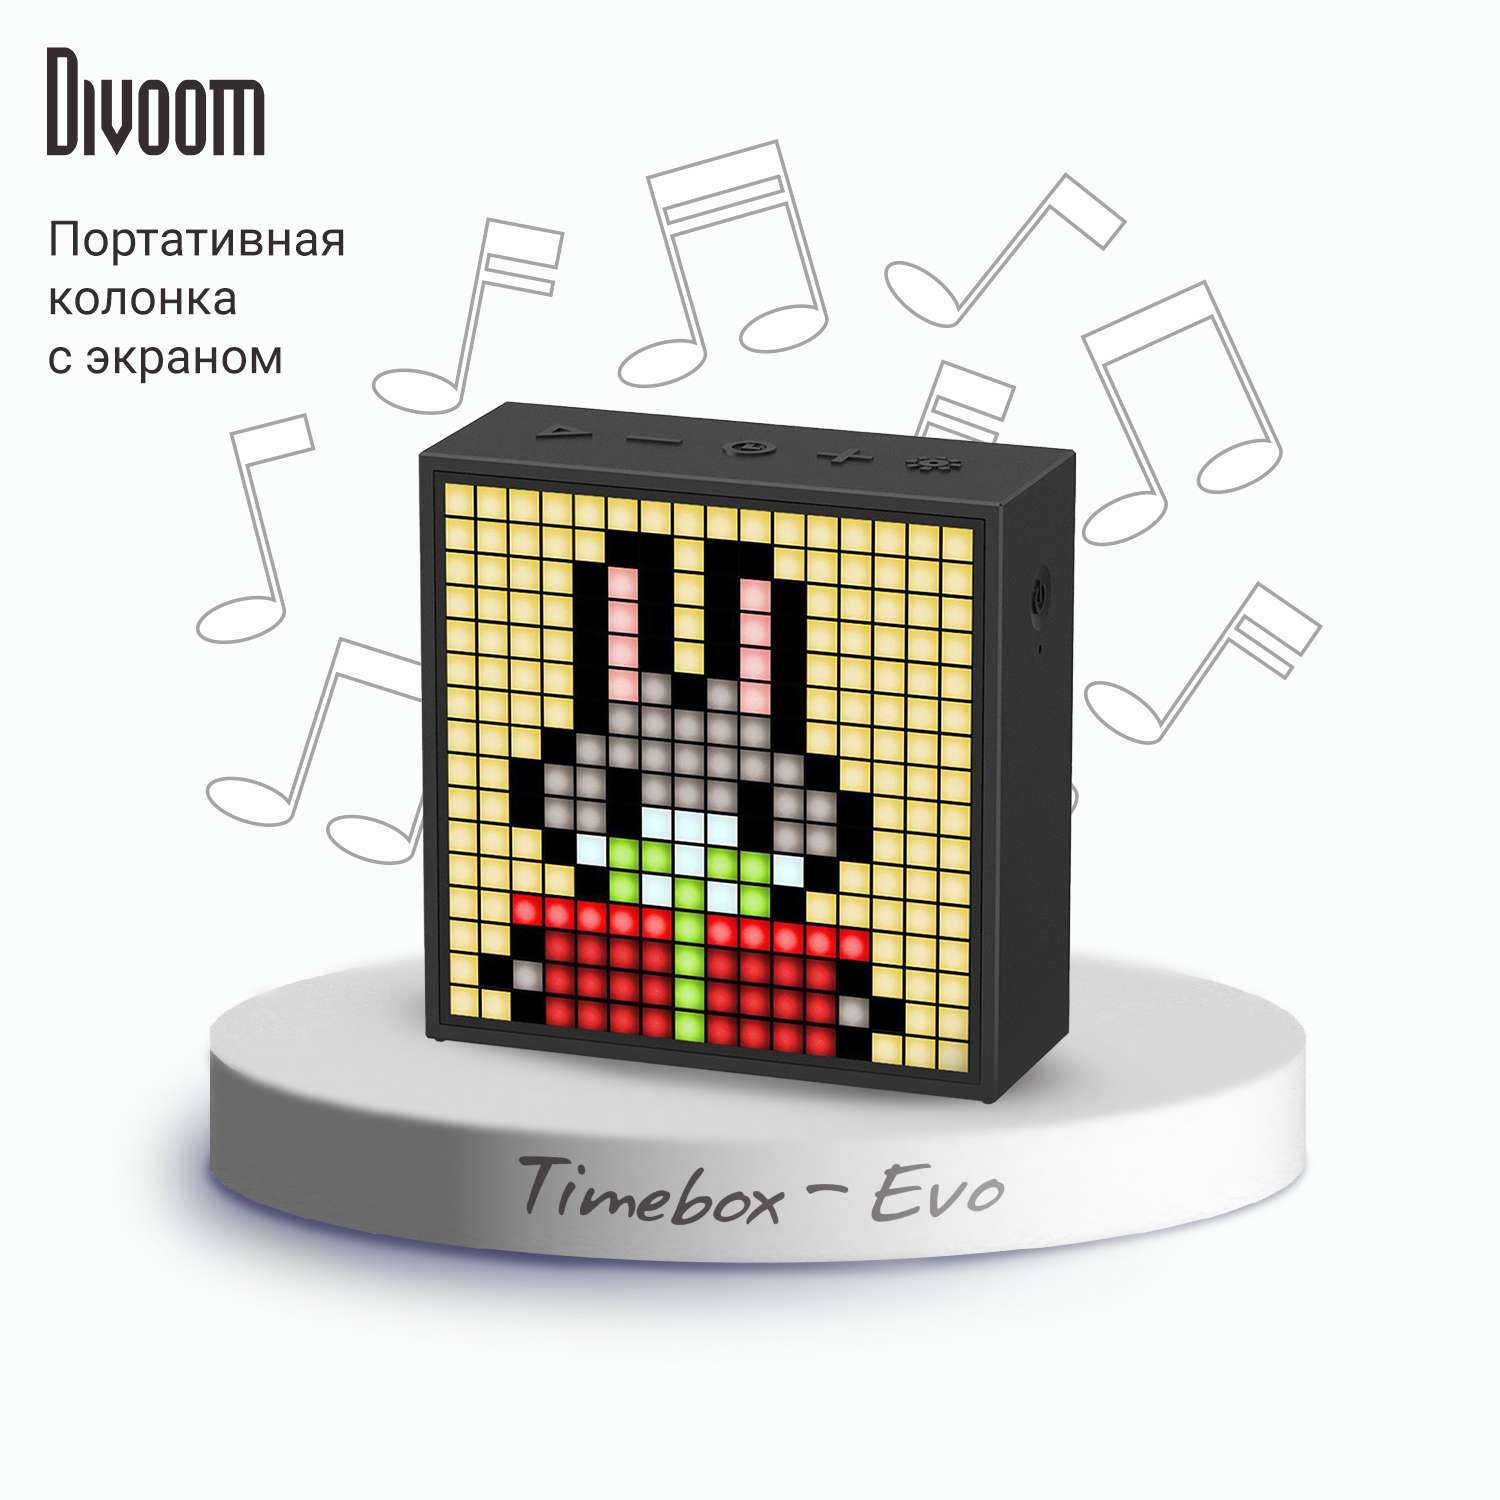 Беспроводная колонка DIVOOM портативная Timebox-Evo черная с пиксельным LED-дисплеем - фото 1